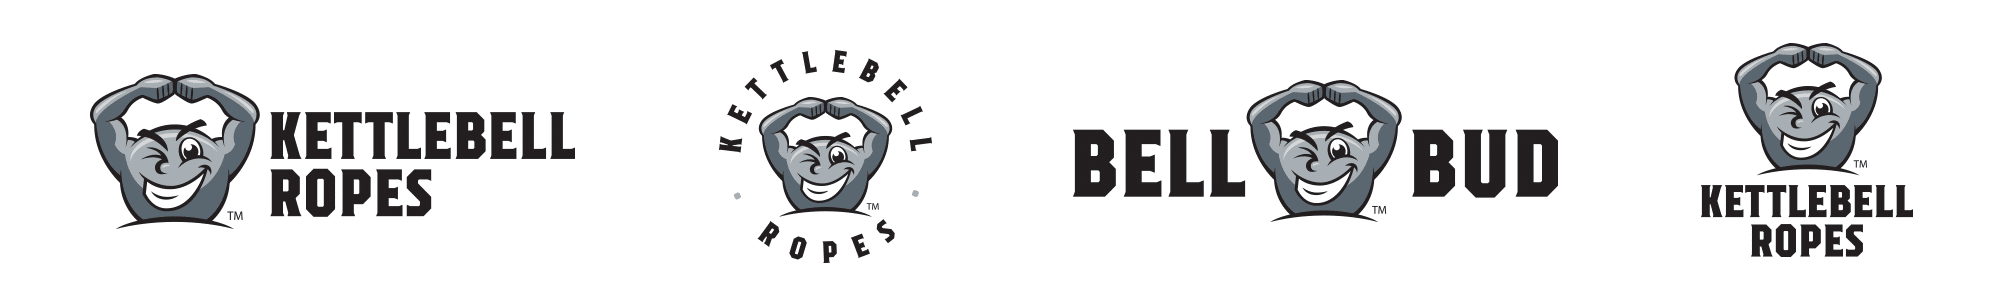 Bell Bud logo lockups